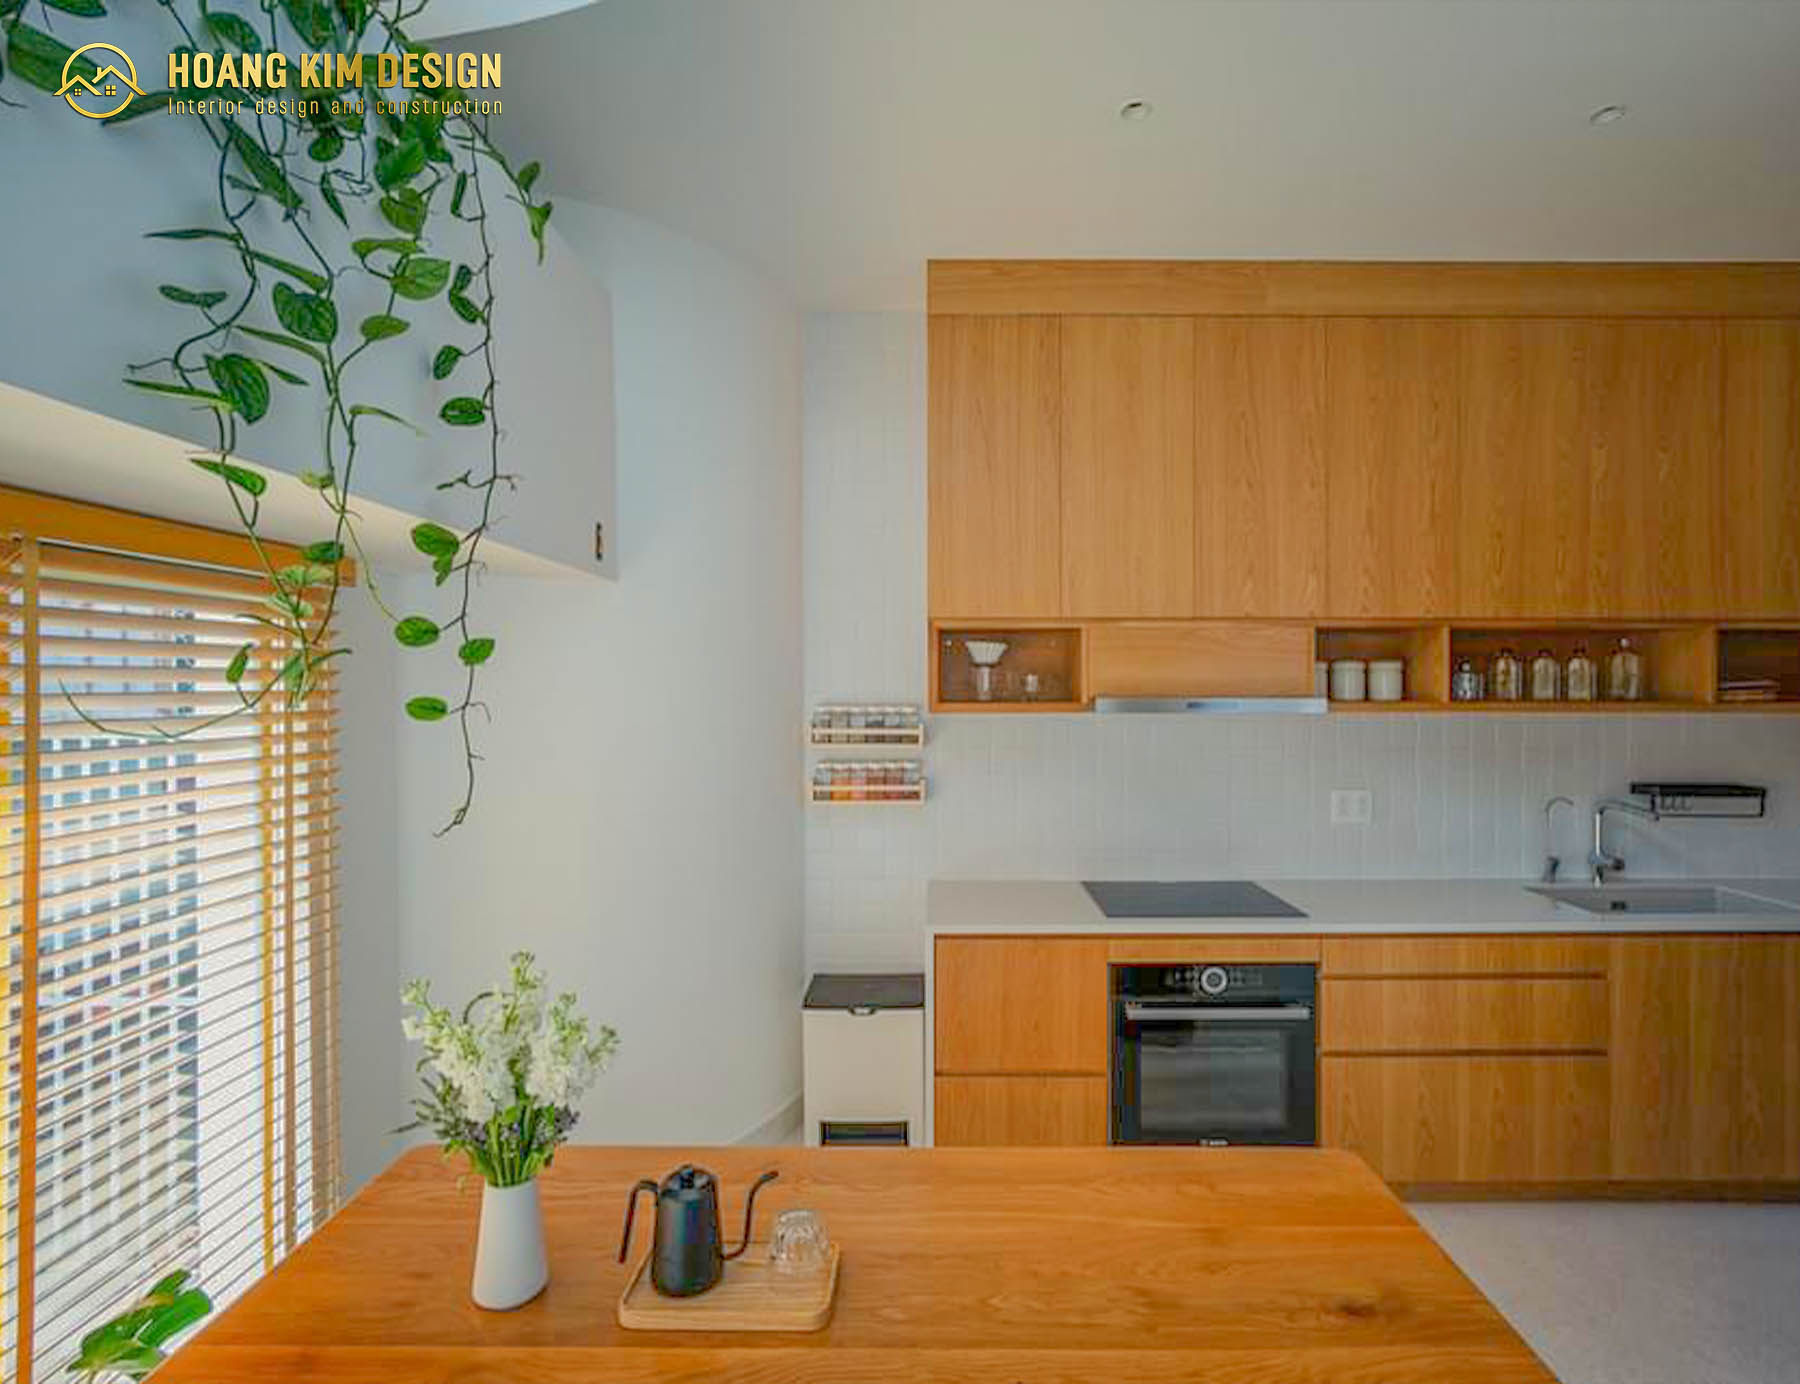 Tủ bếp được thiết kế treo, cao kịch trần giúp tối ưu diện tích cho không gian